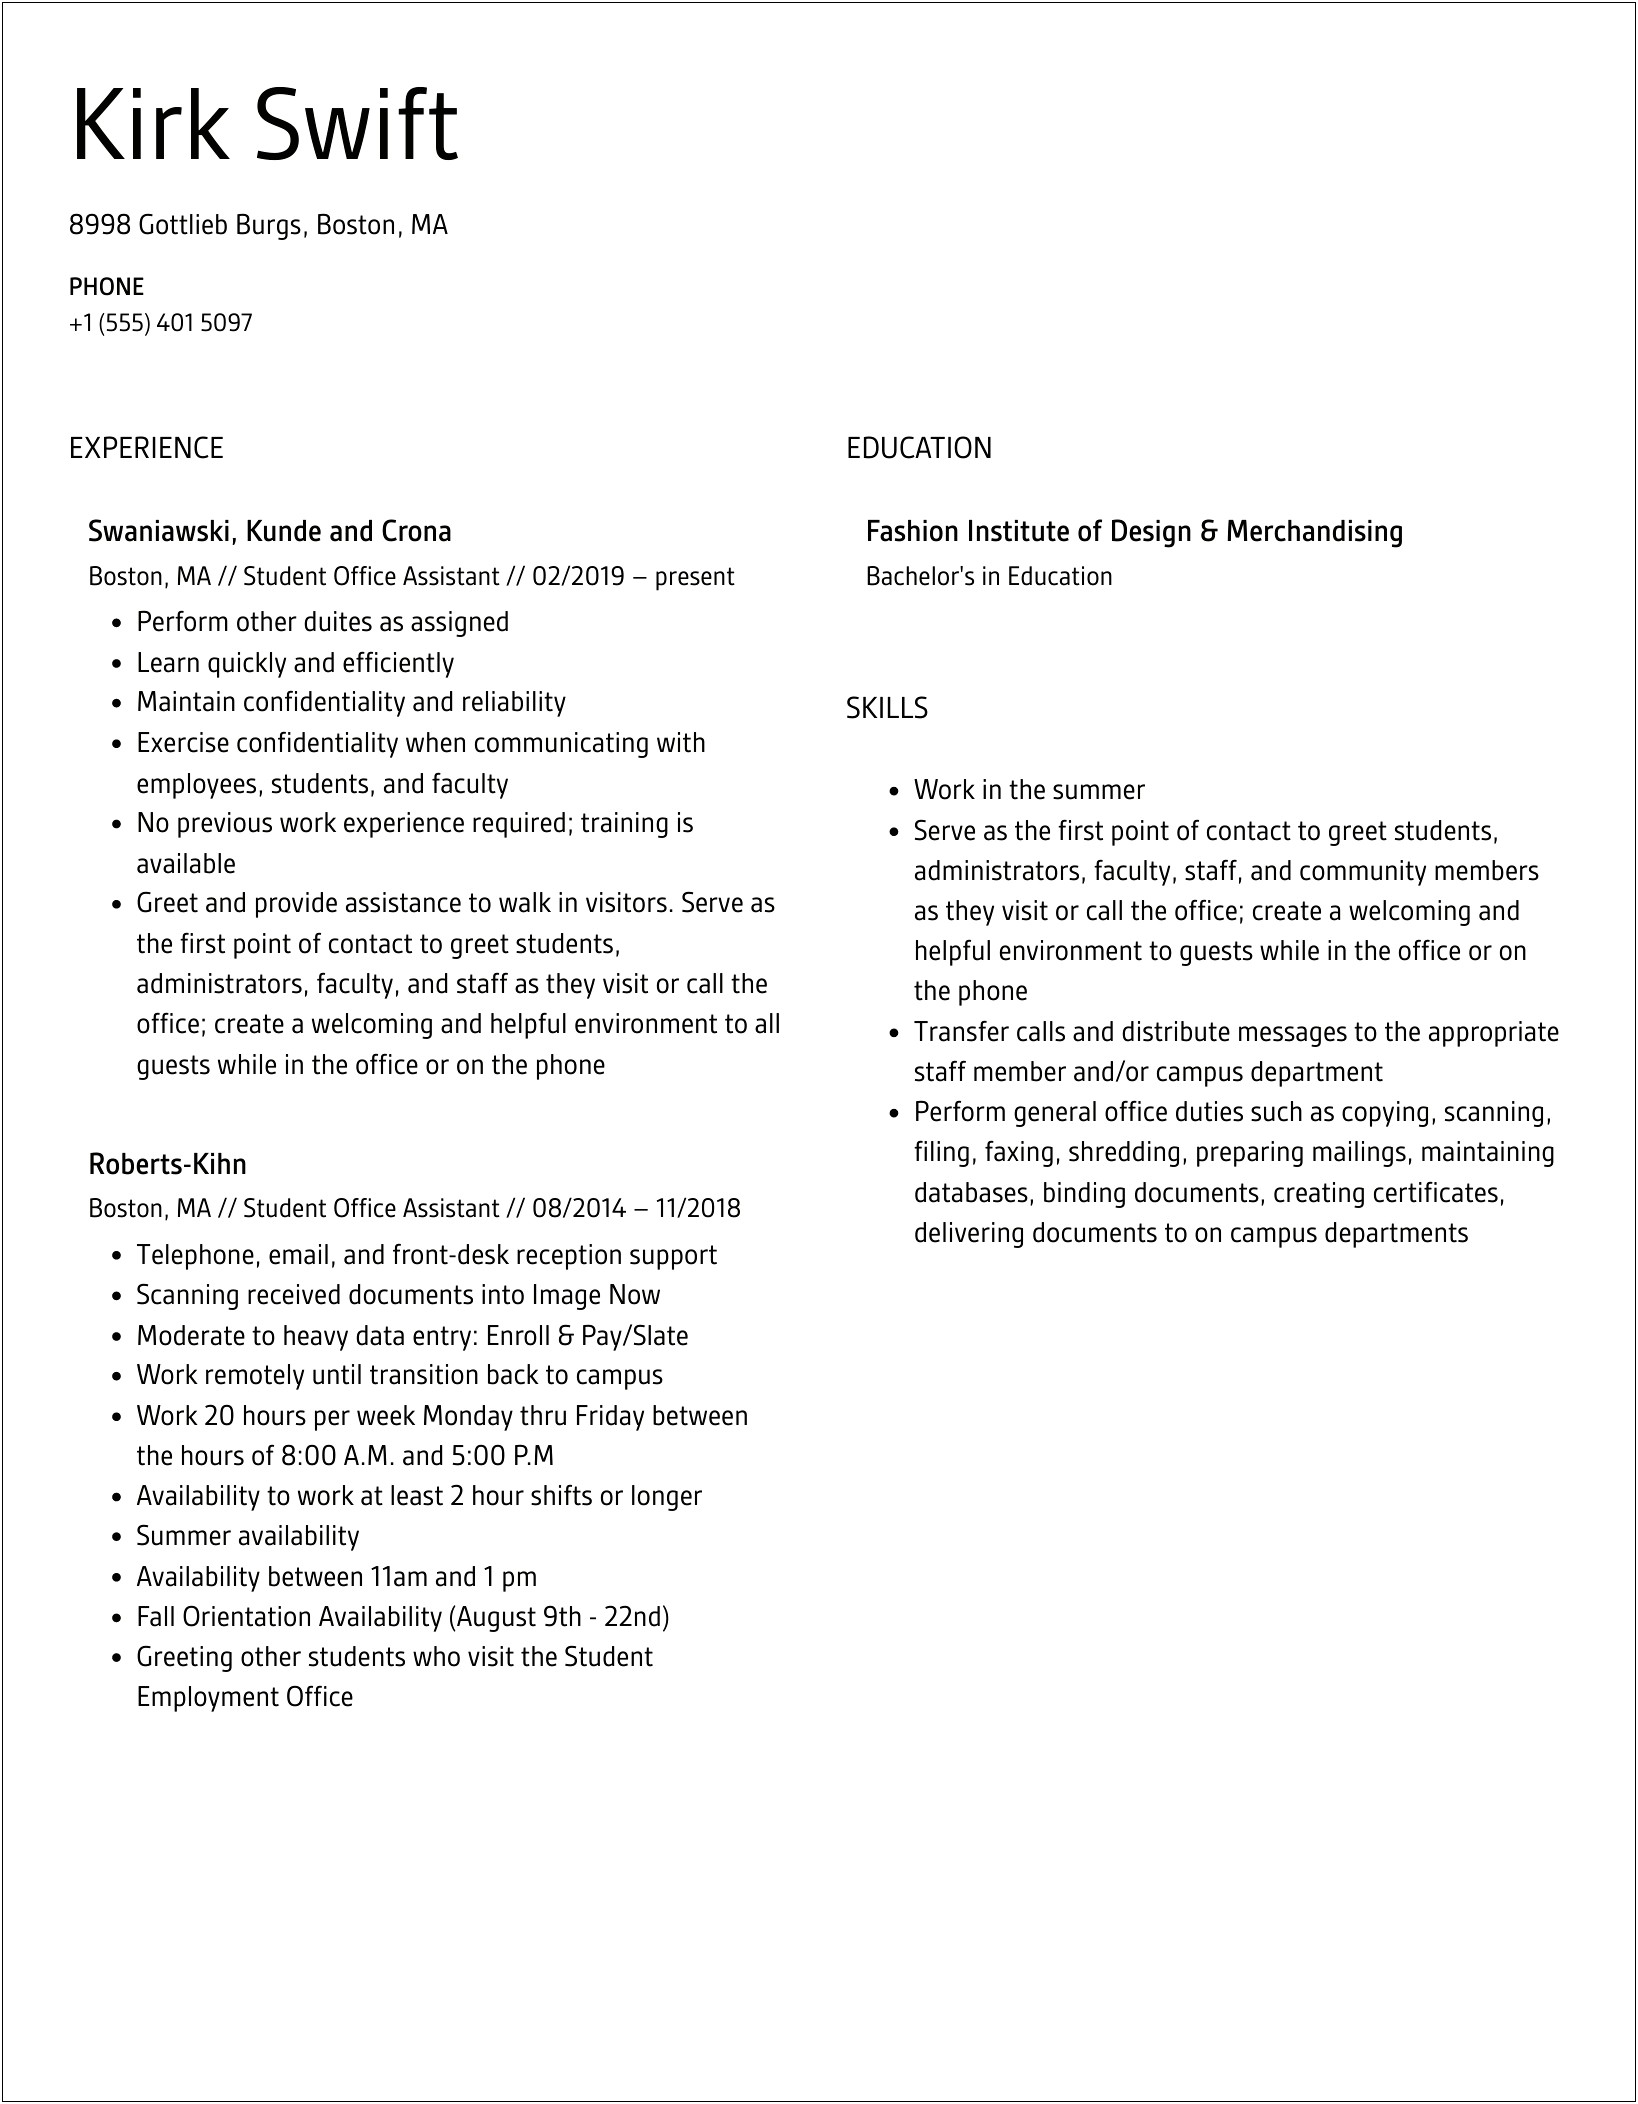 Student Office Assistant Job Description Resume